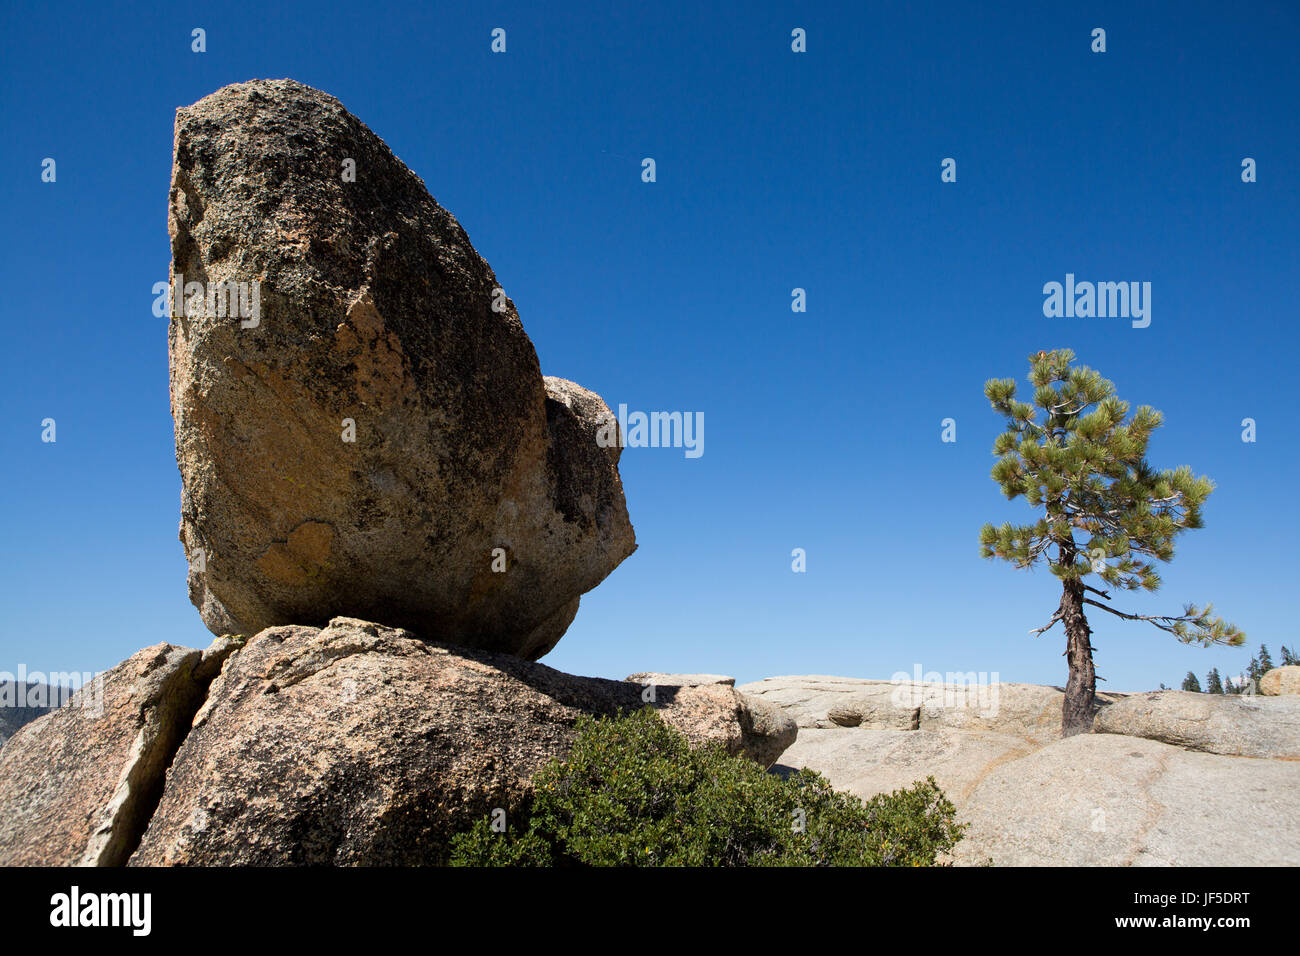 En Taft punto pico, una gran roca descansa sobre una cornisa que conduce al valle de Yosemite a continuación. Foto de stock